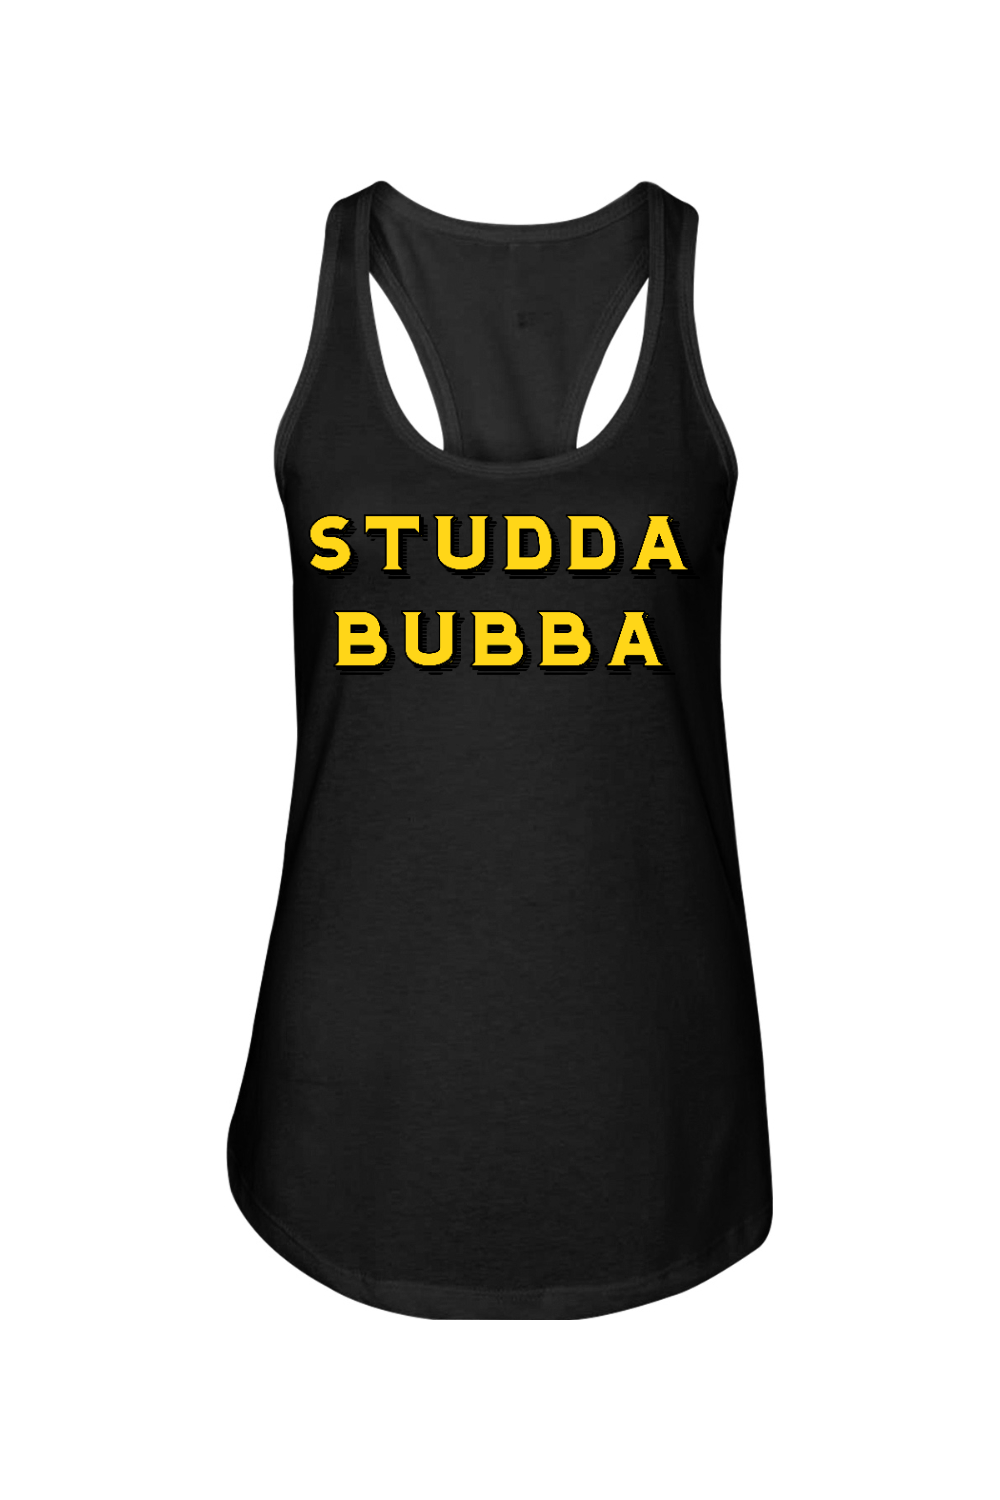 Studda Bubba - Ladies Racerback Tank - Yinzylvania